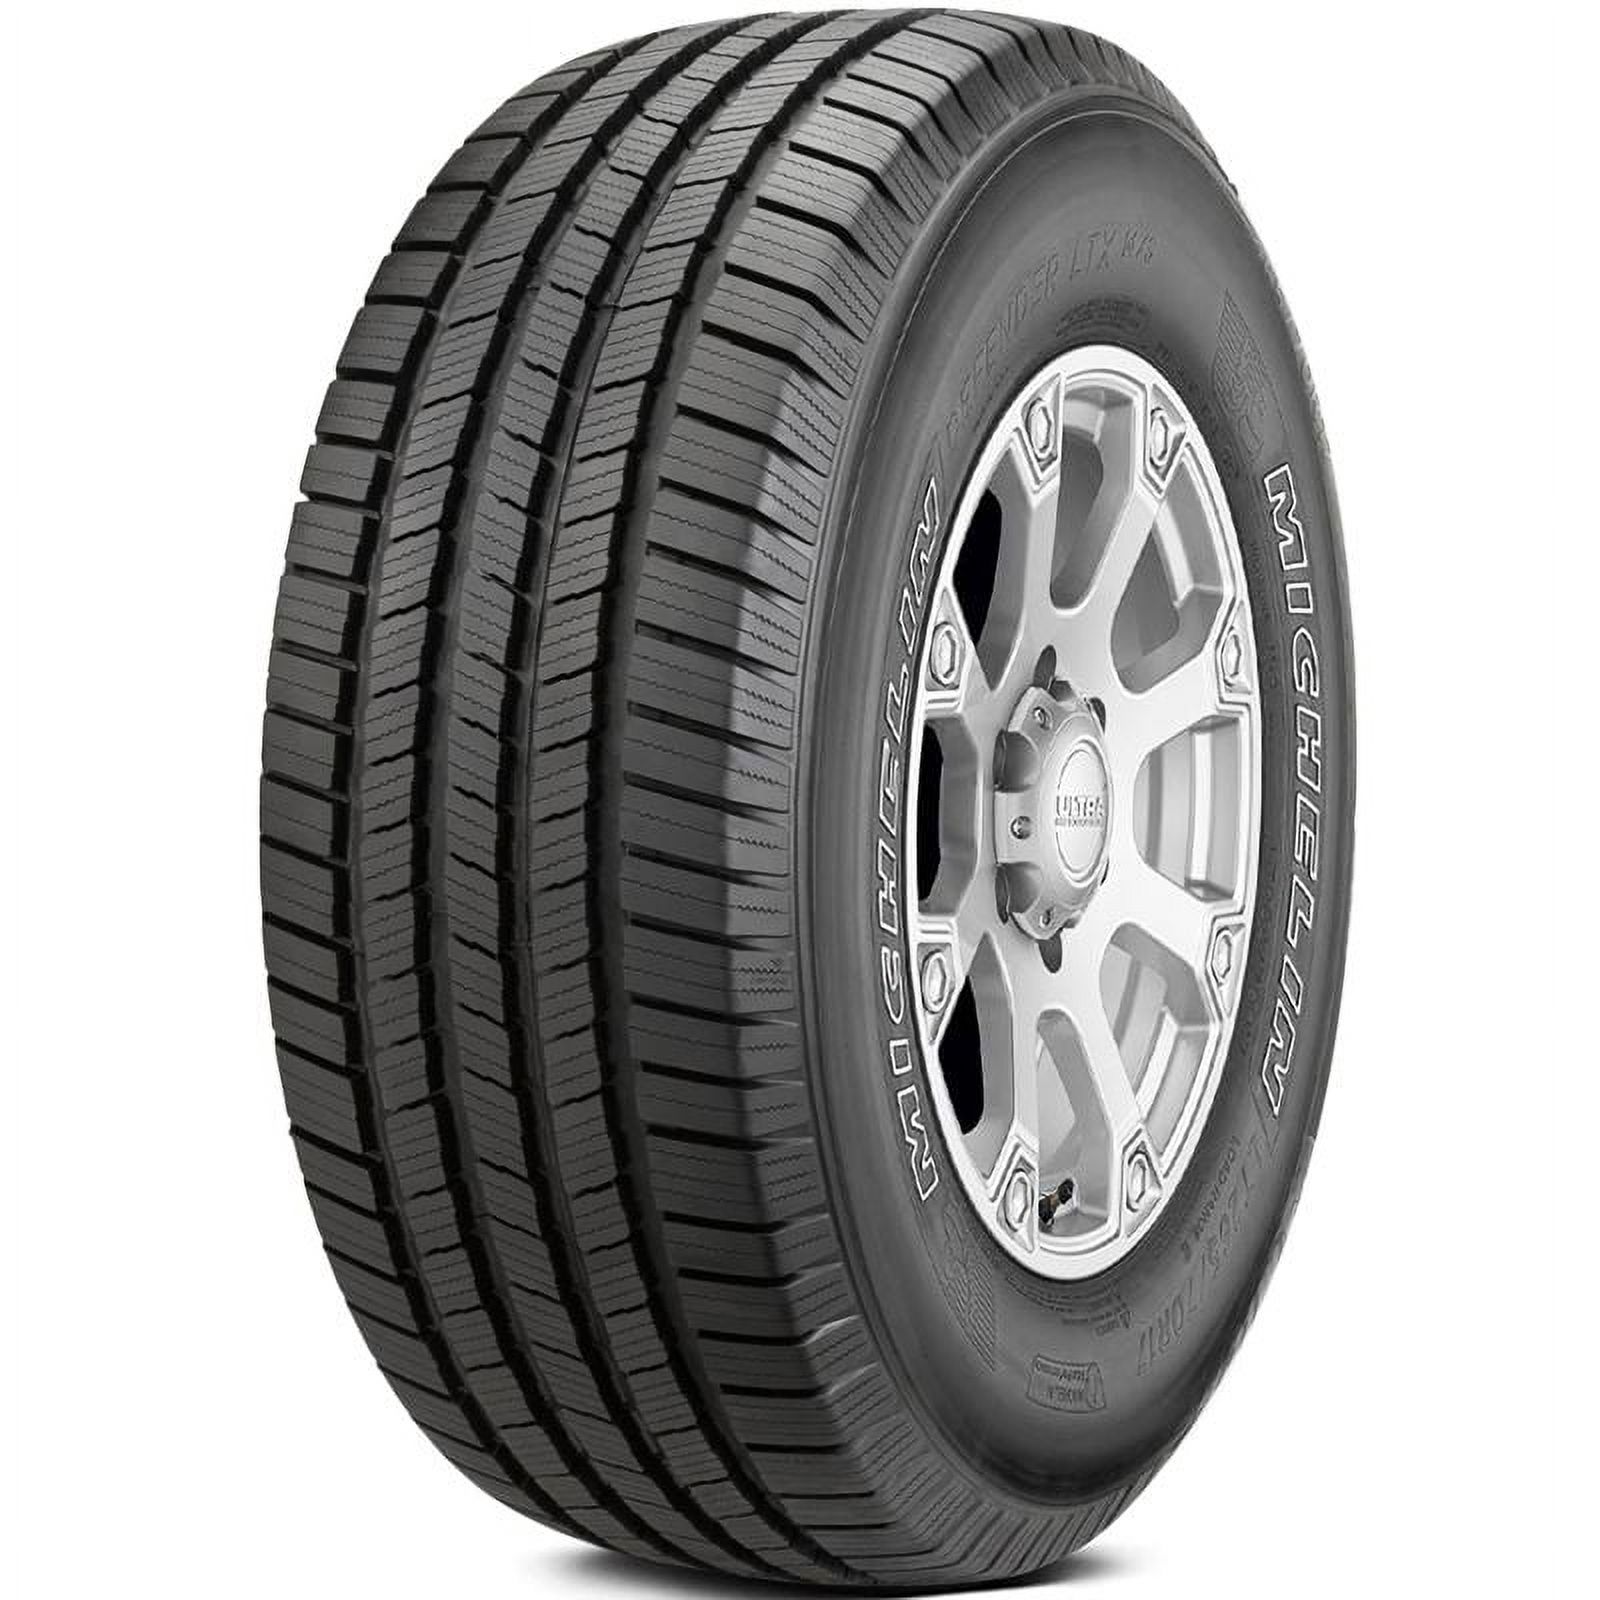 Michelin Defender LTX M/S All-Season 265/70R17 115T Tire - image 1 of 20